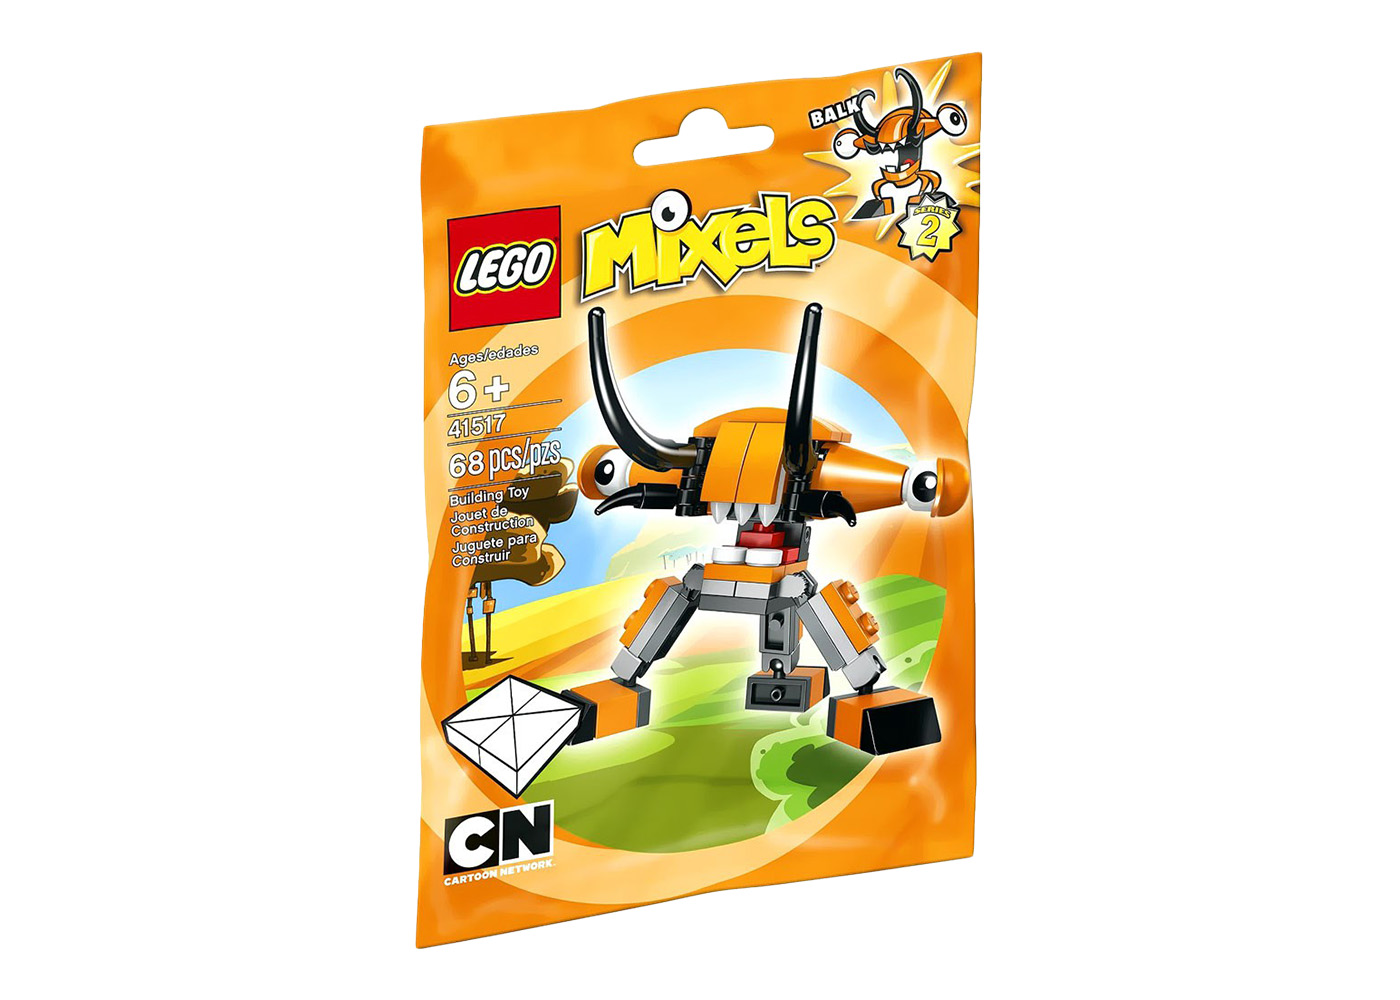 LEGO Mixels Teslo Set 41506 - US